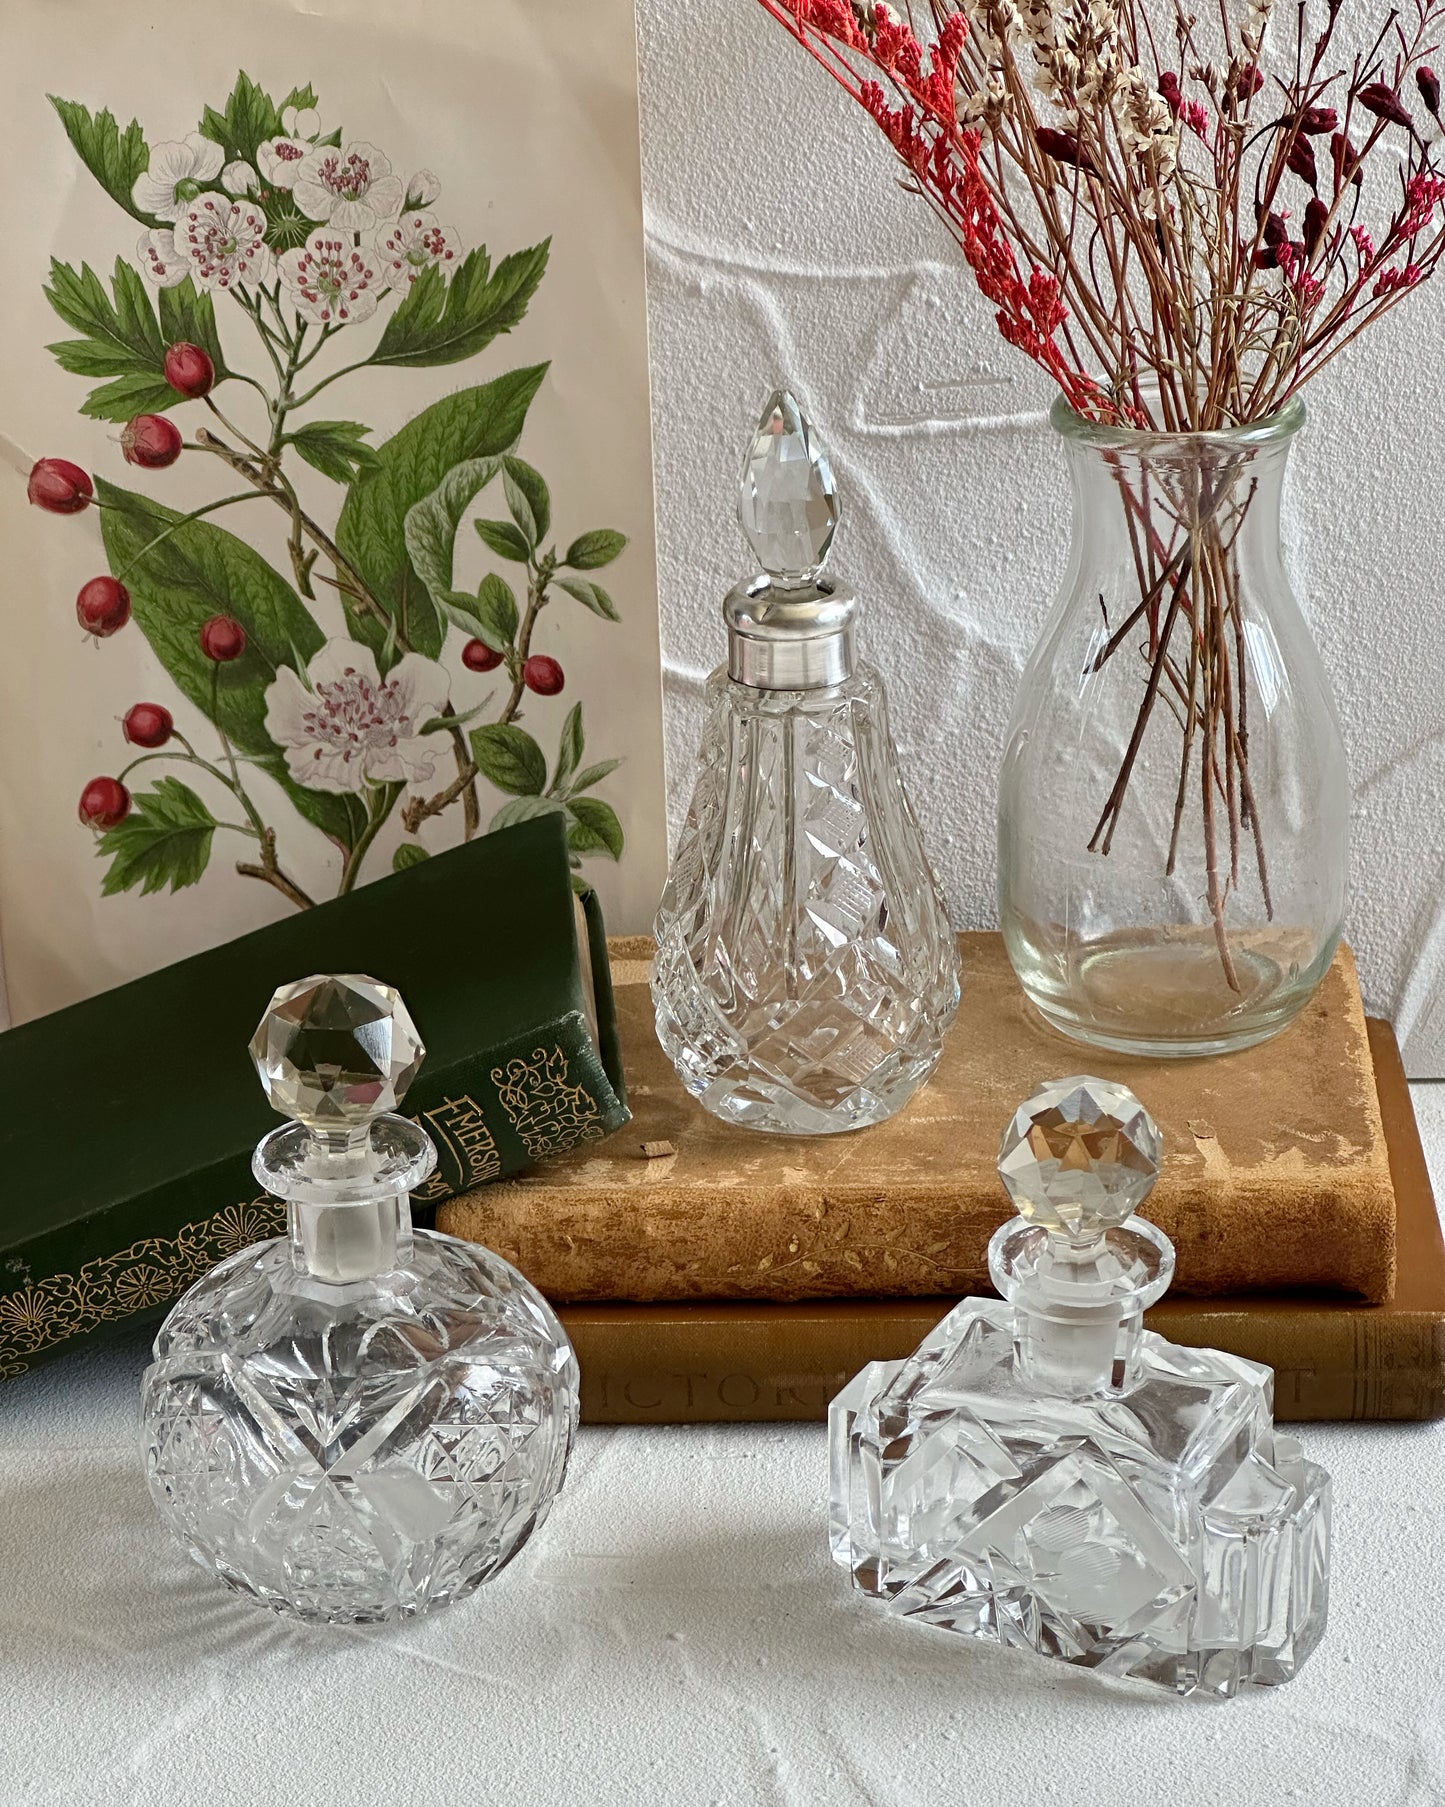 Antique Edwardian Kaheksakand cut glass perfume bottle